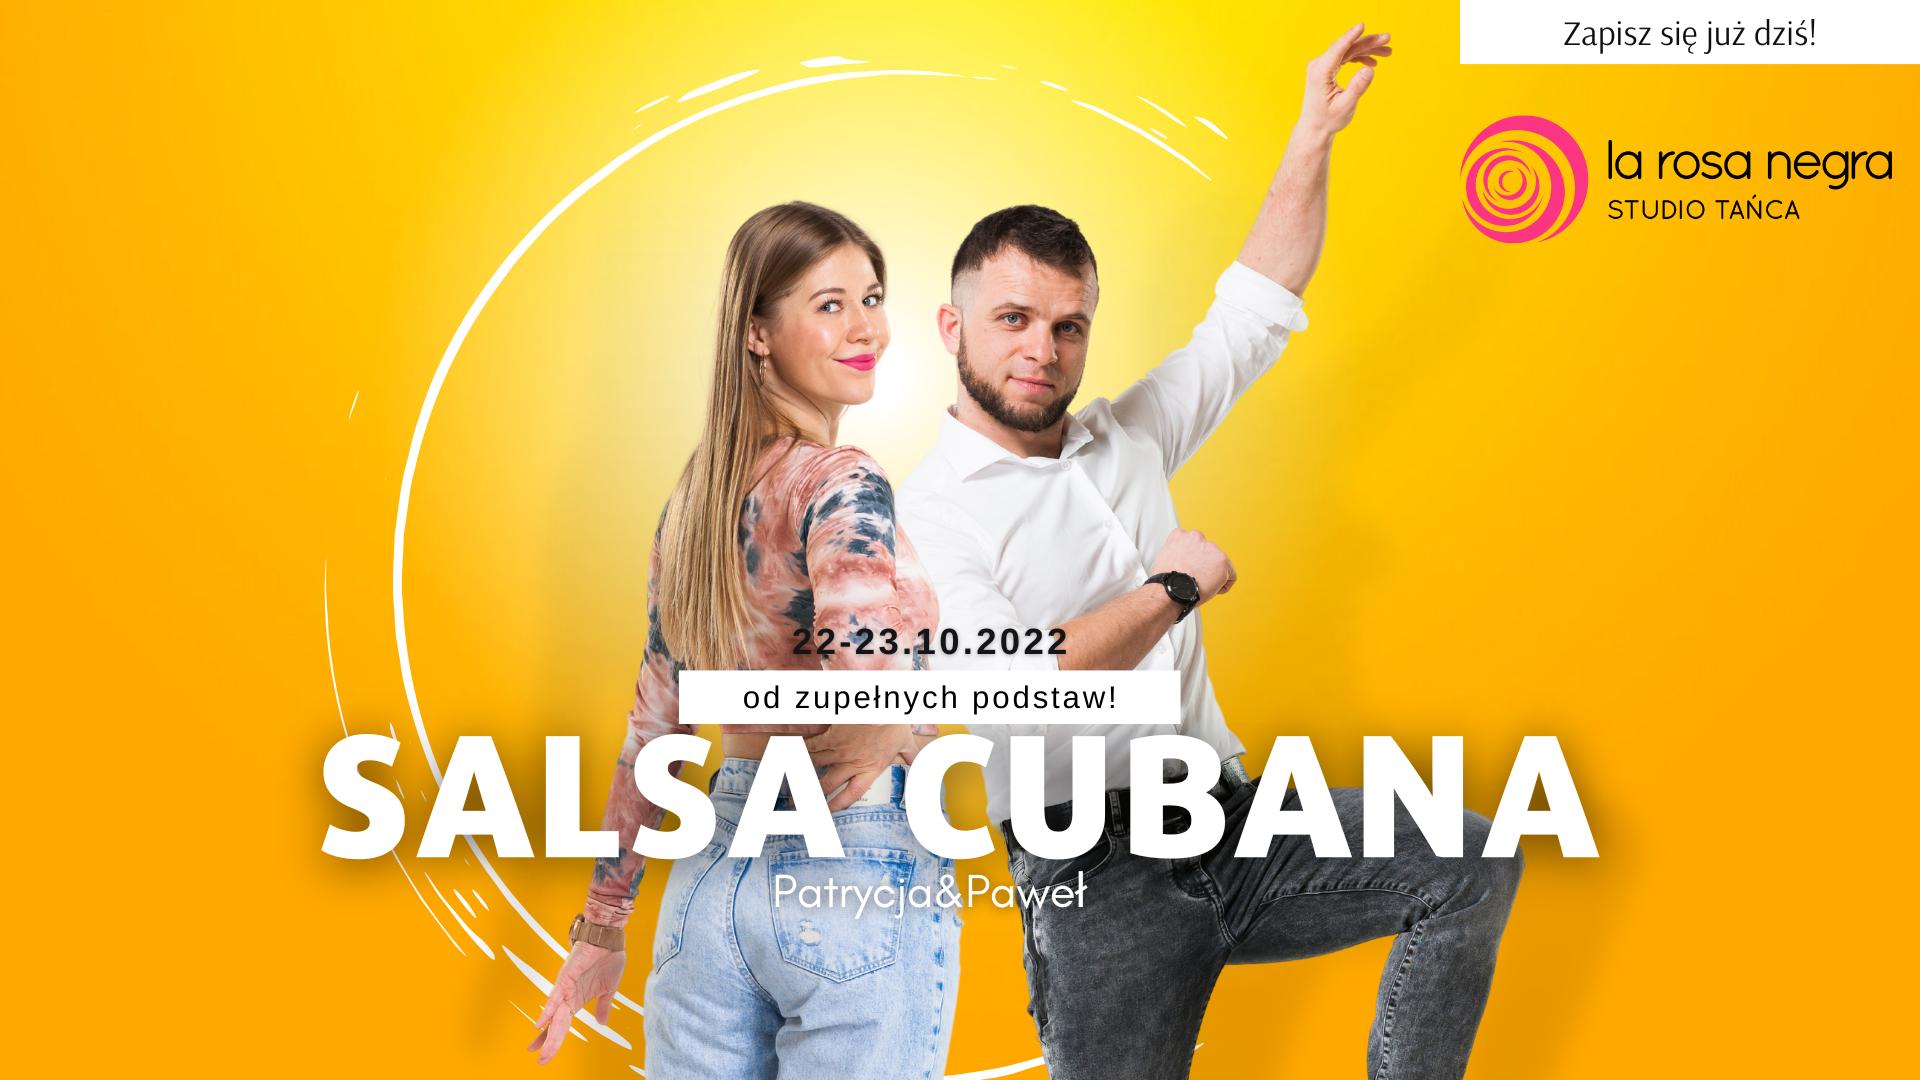 Salsa cubana od podstaw z Patrycją&Pawłem - zajęcia weekendowe